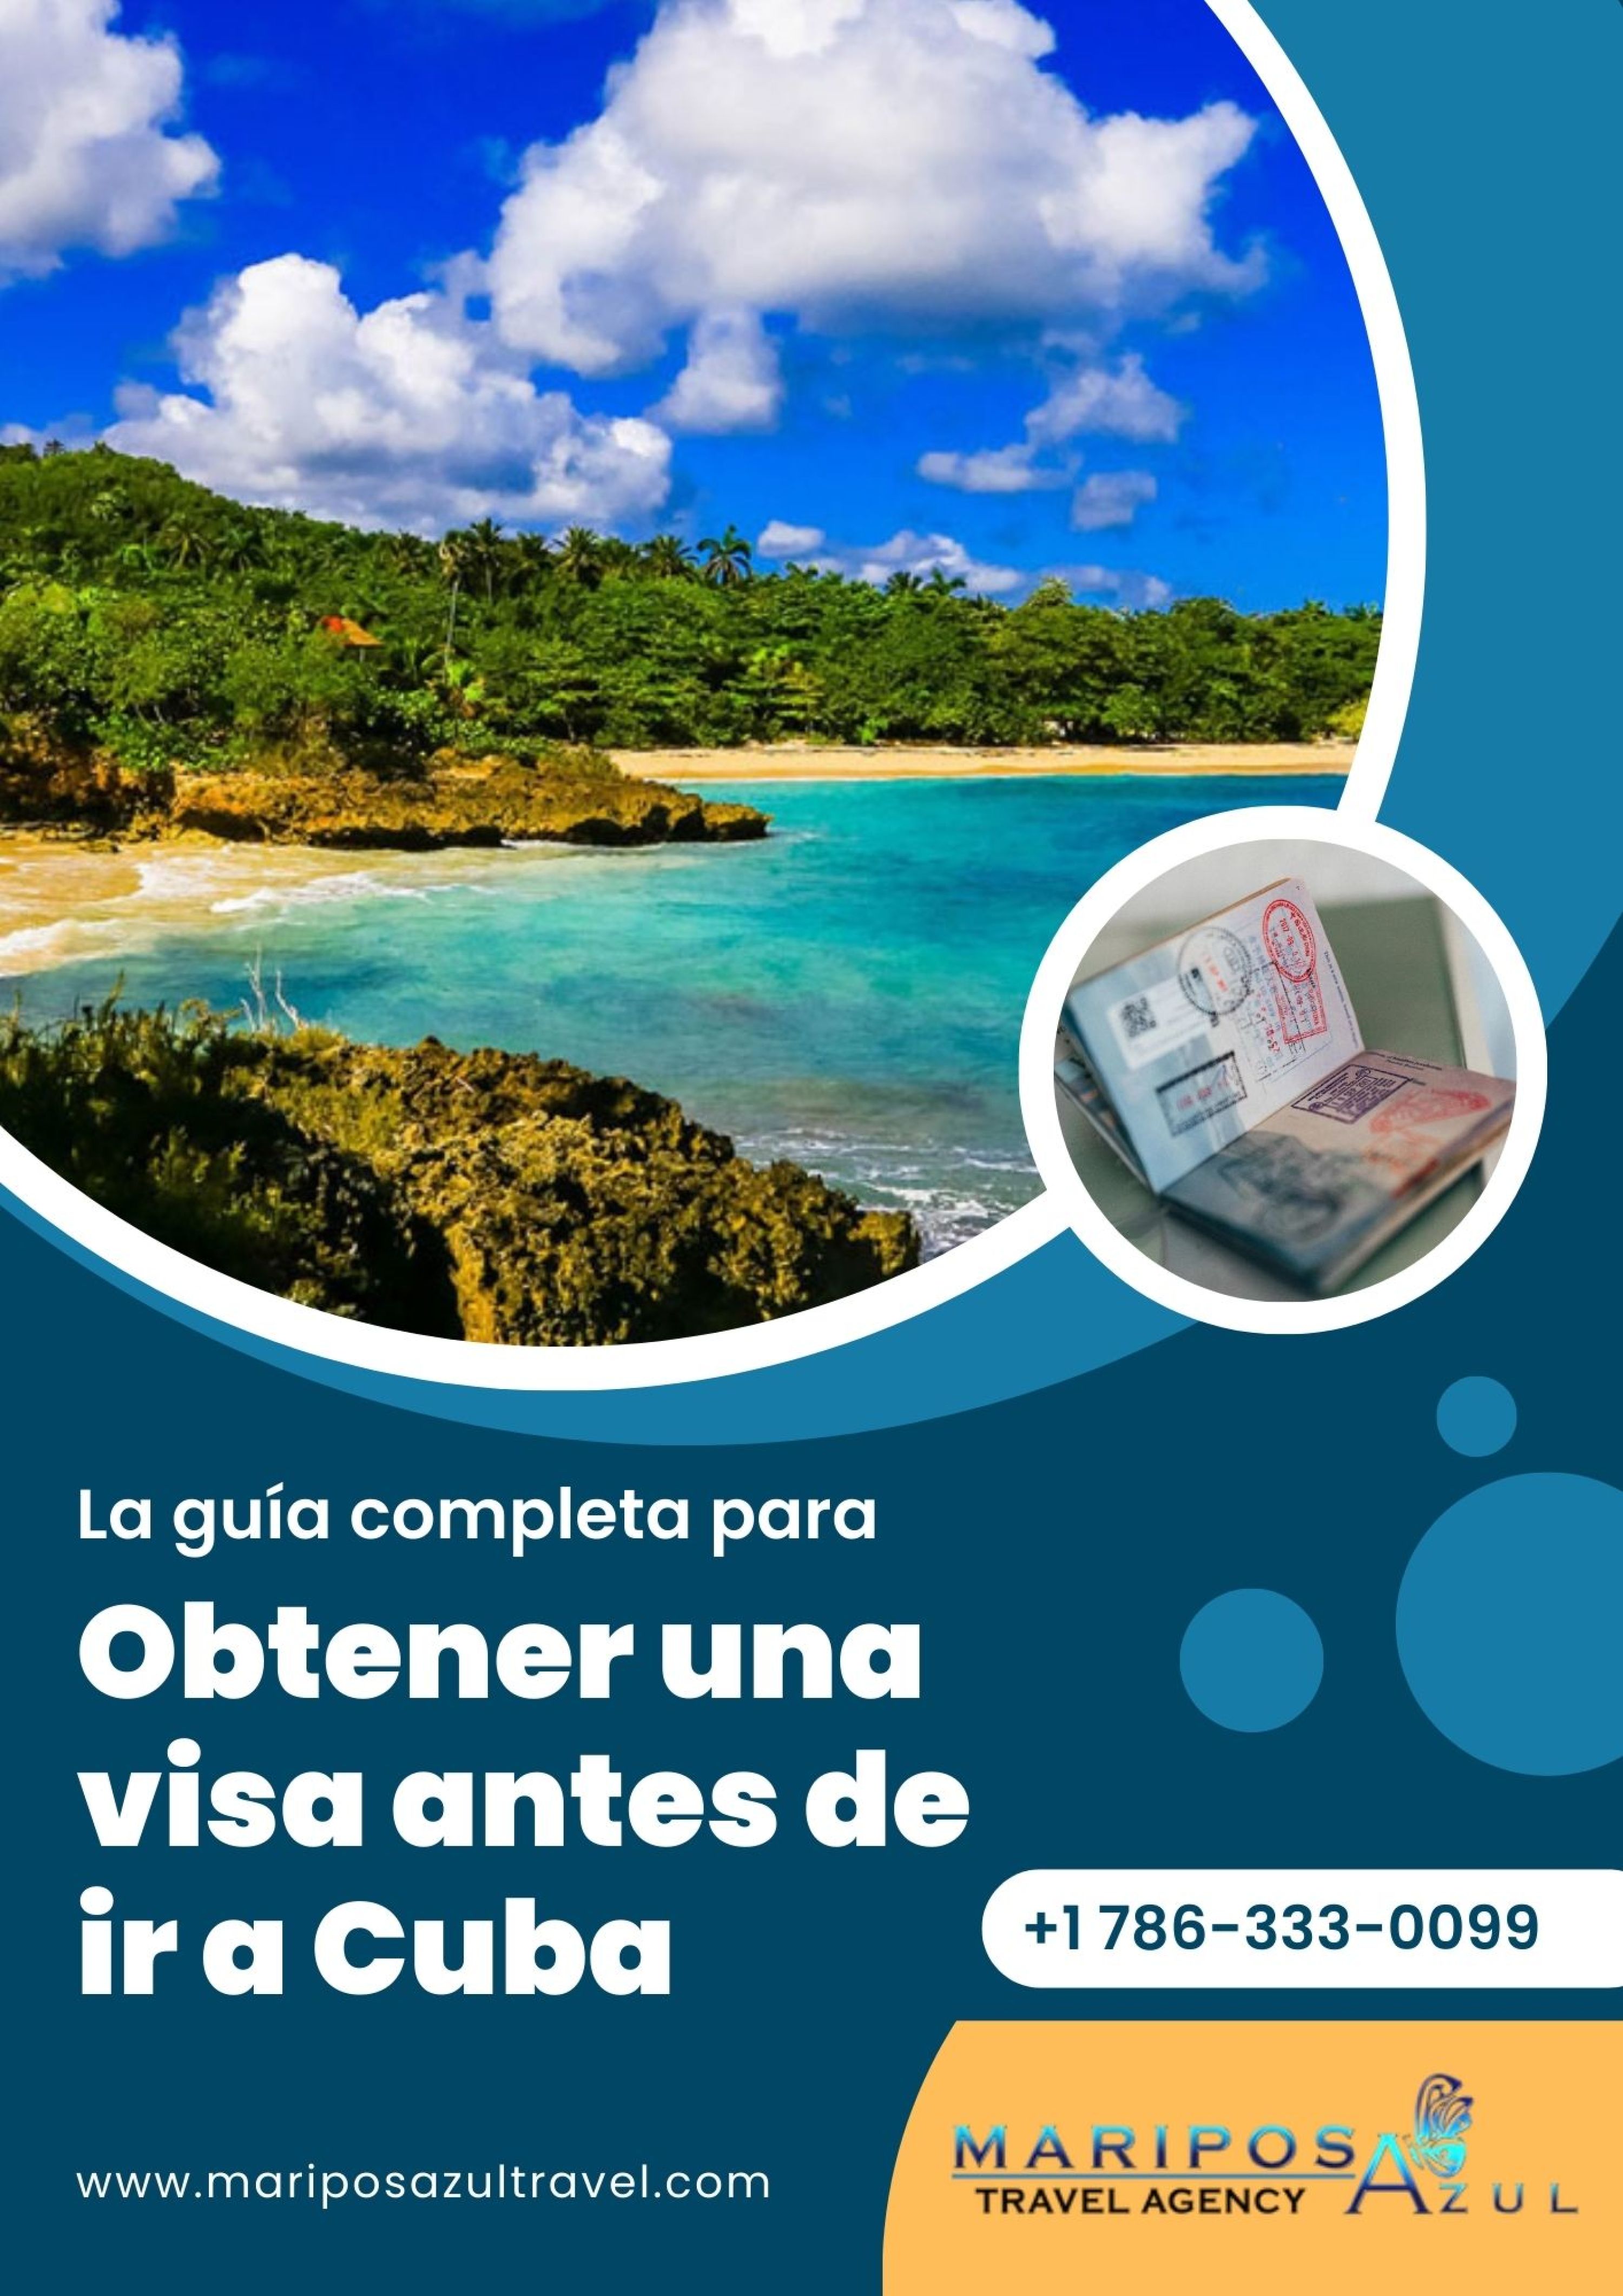 La guía completa para obtener una visa antes de ir a Cuba